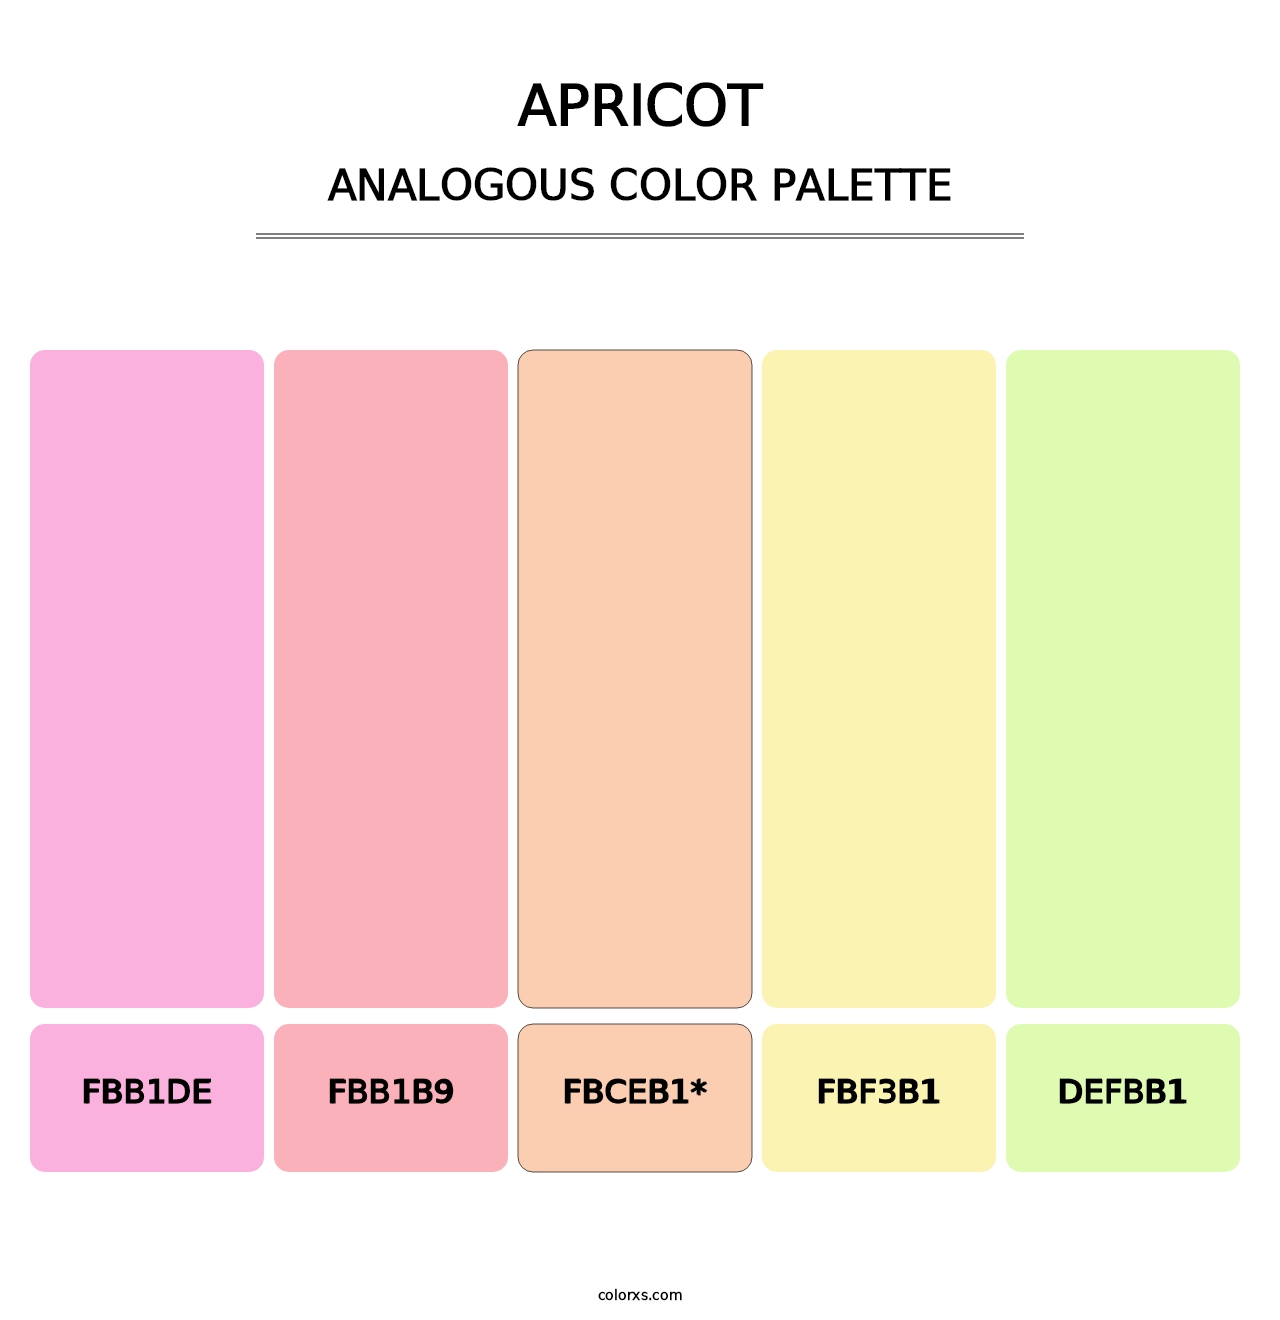 Apricot - Analogous Color Palette